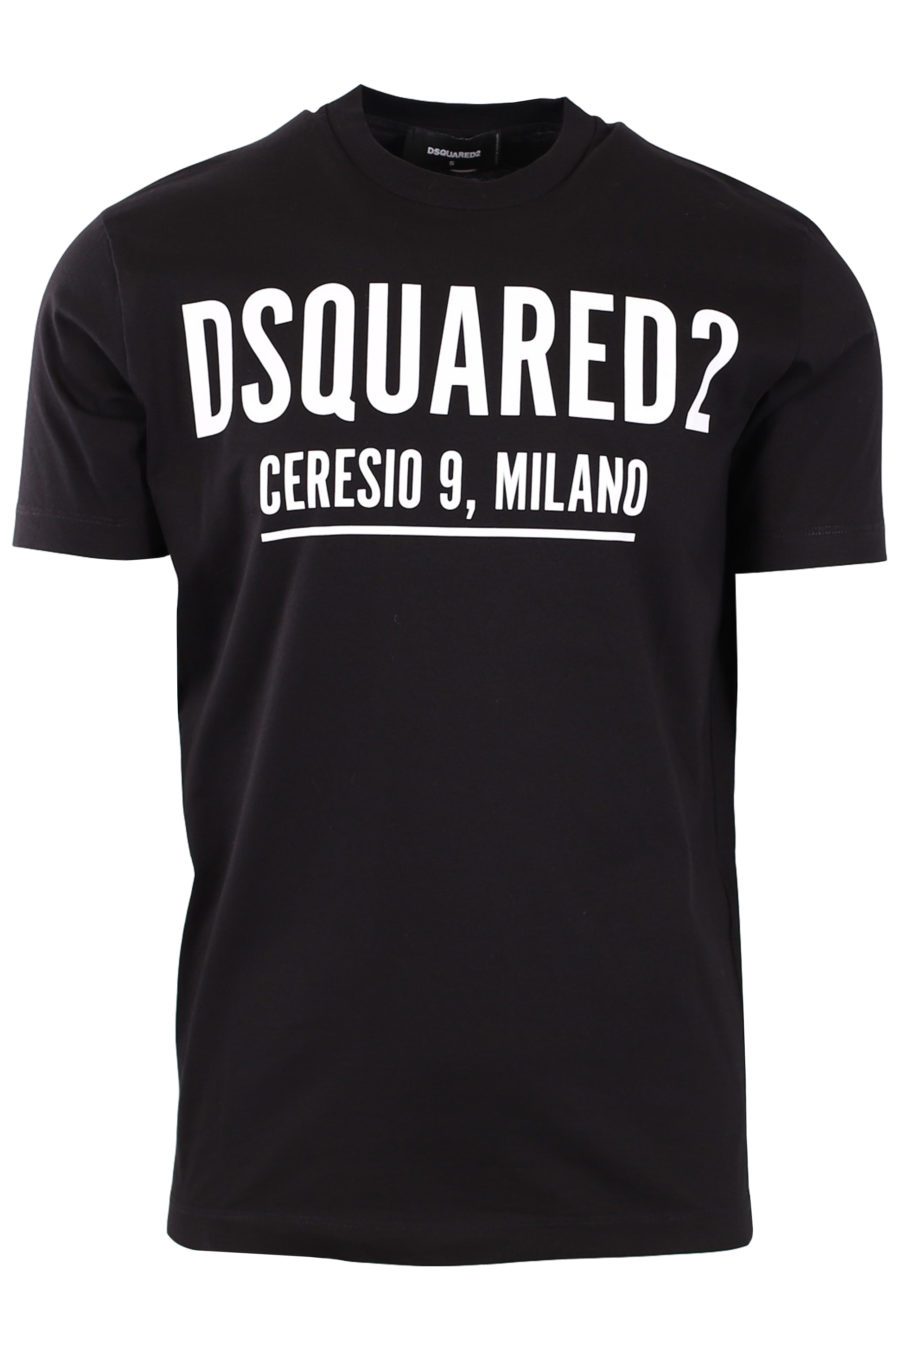 T-shirt preta com estampado branco "Ceresio 9 Milano" - c3237da25770cfc59ea861161d24ac6df31a3ef6